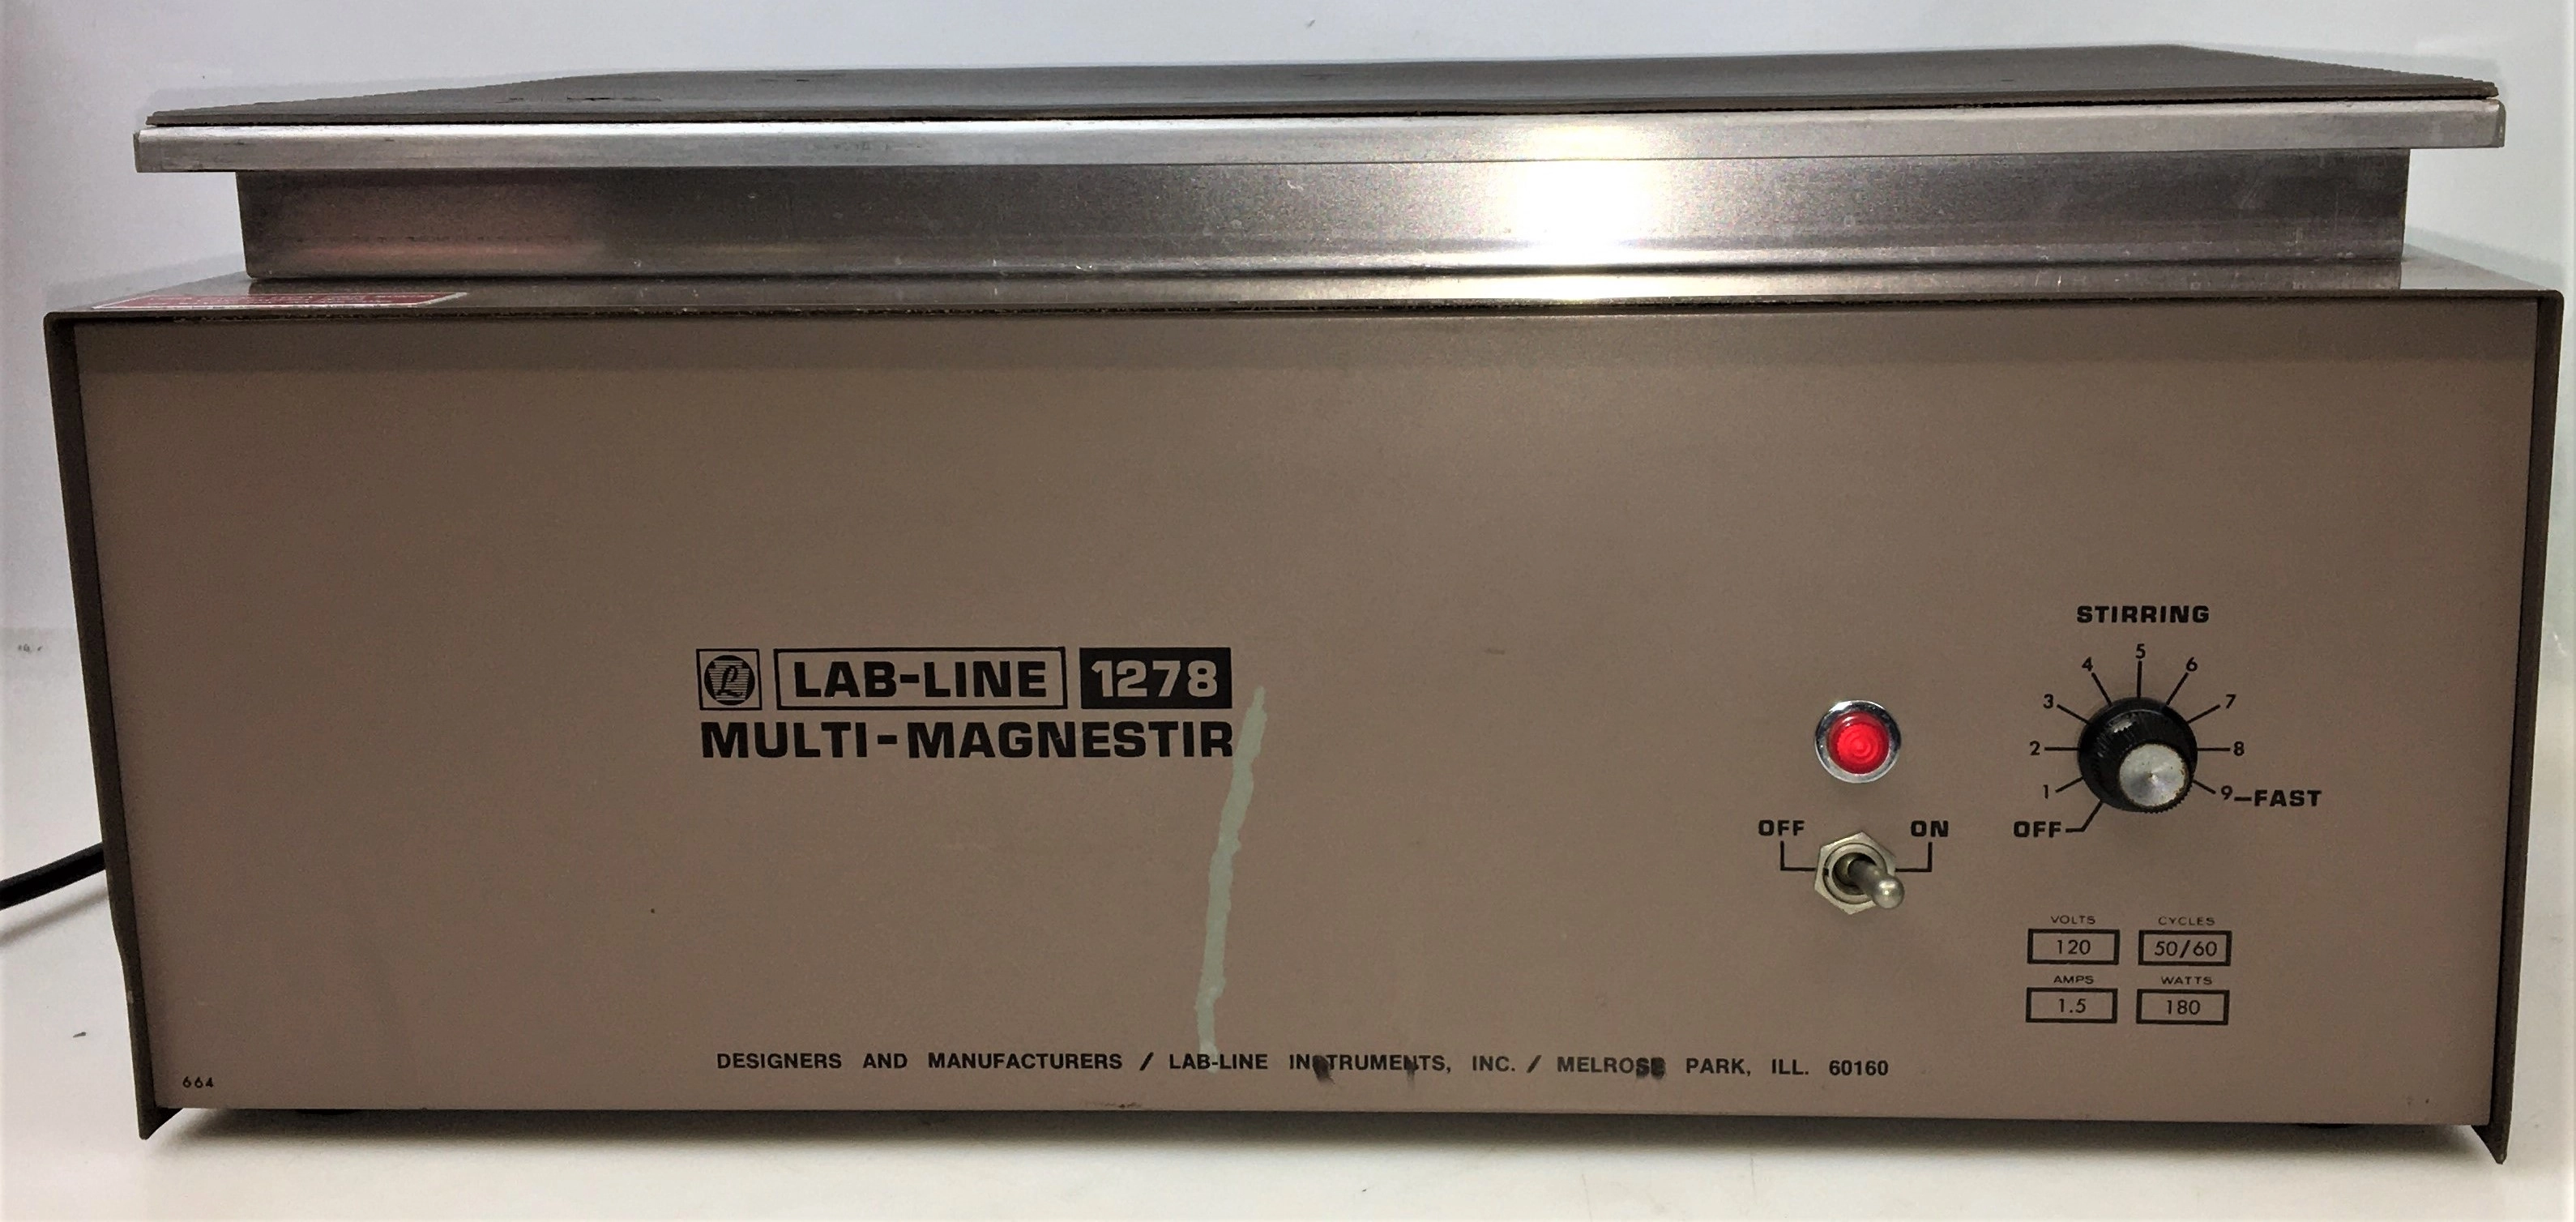 Lab-Line 1278 Multi-Magnestir 6-Place Magnetic Stirrer